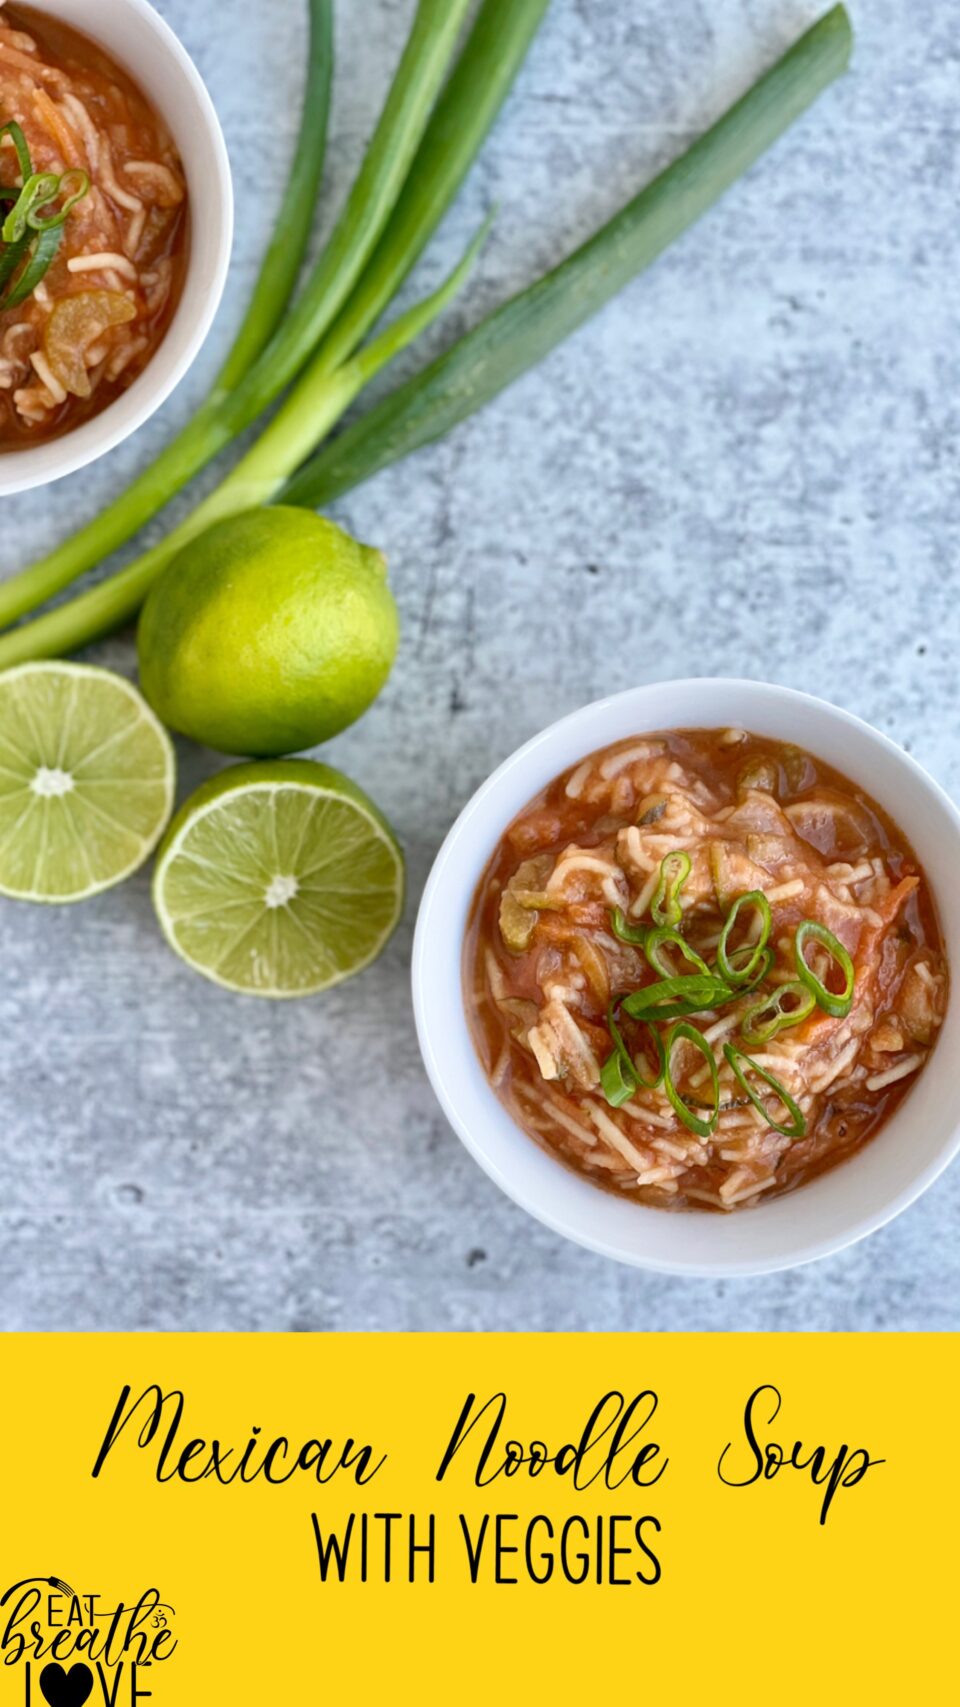 Mexican Noodle Soup with Veggies - Sopa de Fideos - eat.breathe.love